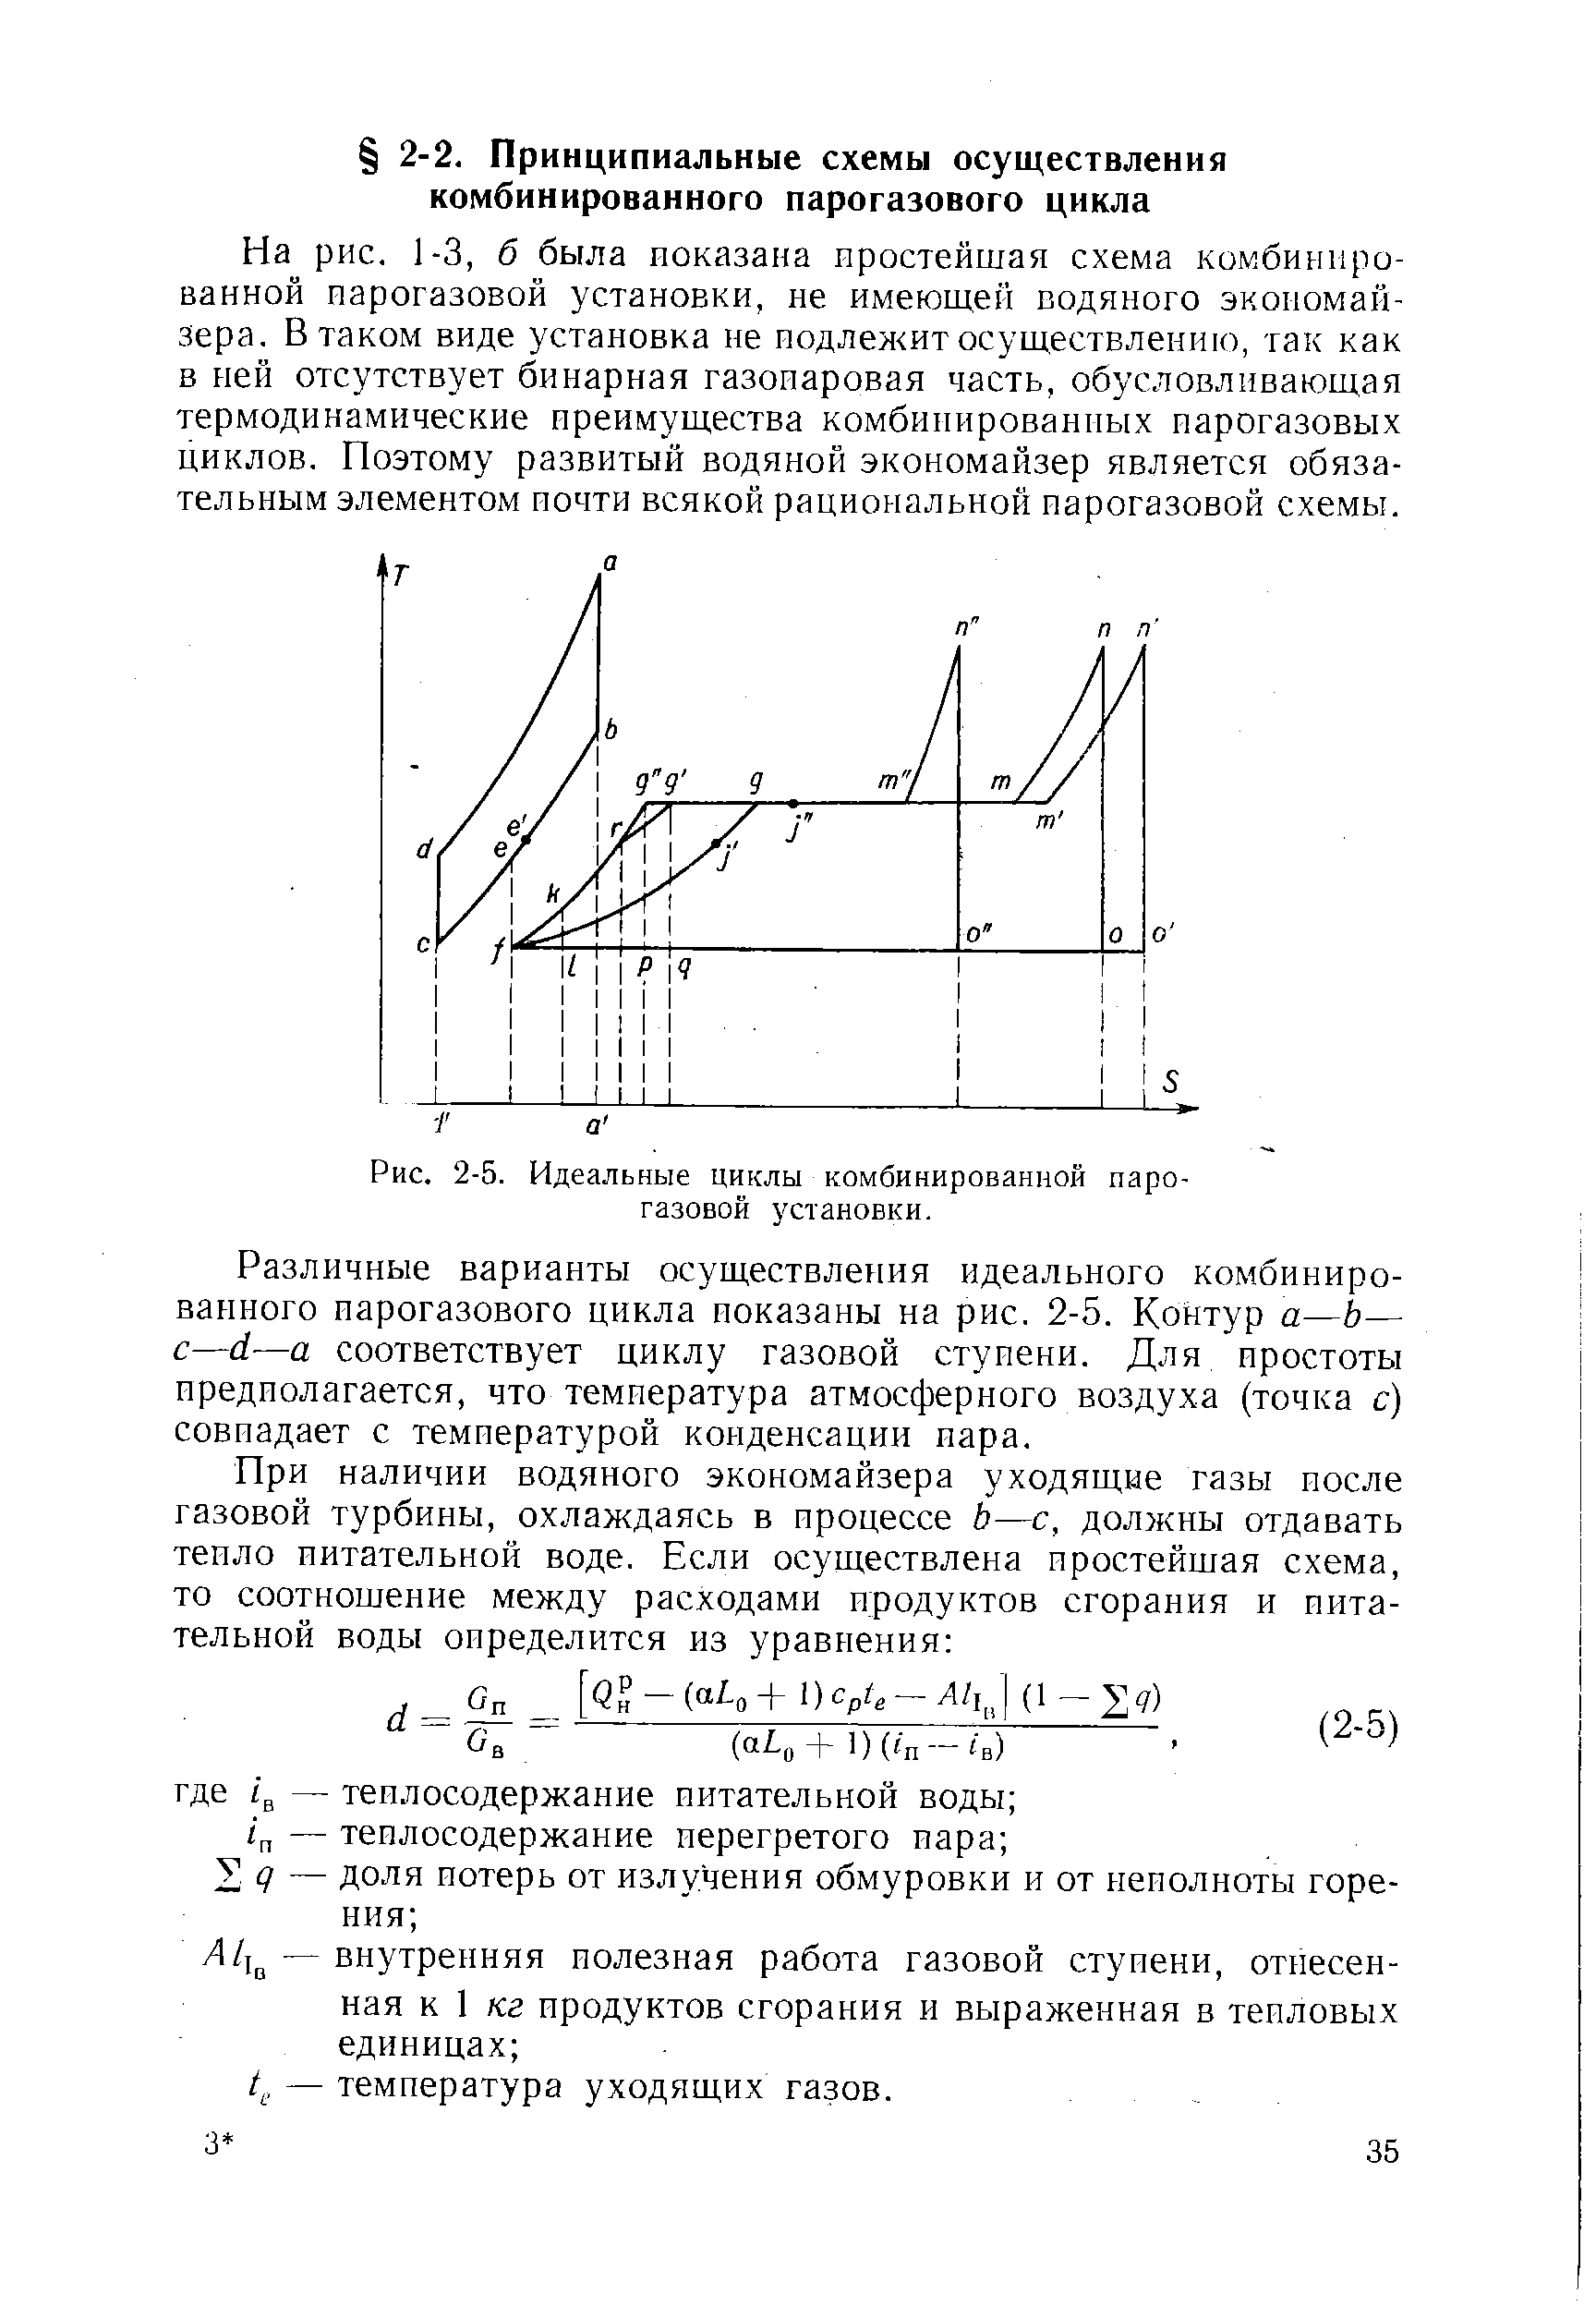 Рис. 2-5. <a href="/info/758761">Идеальные циклы</a> комбинированной парогазовой установки.
